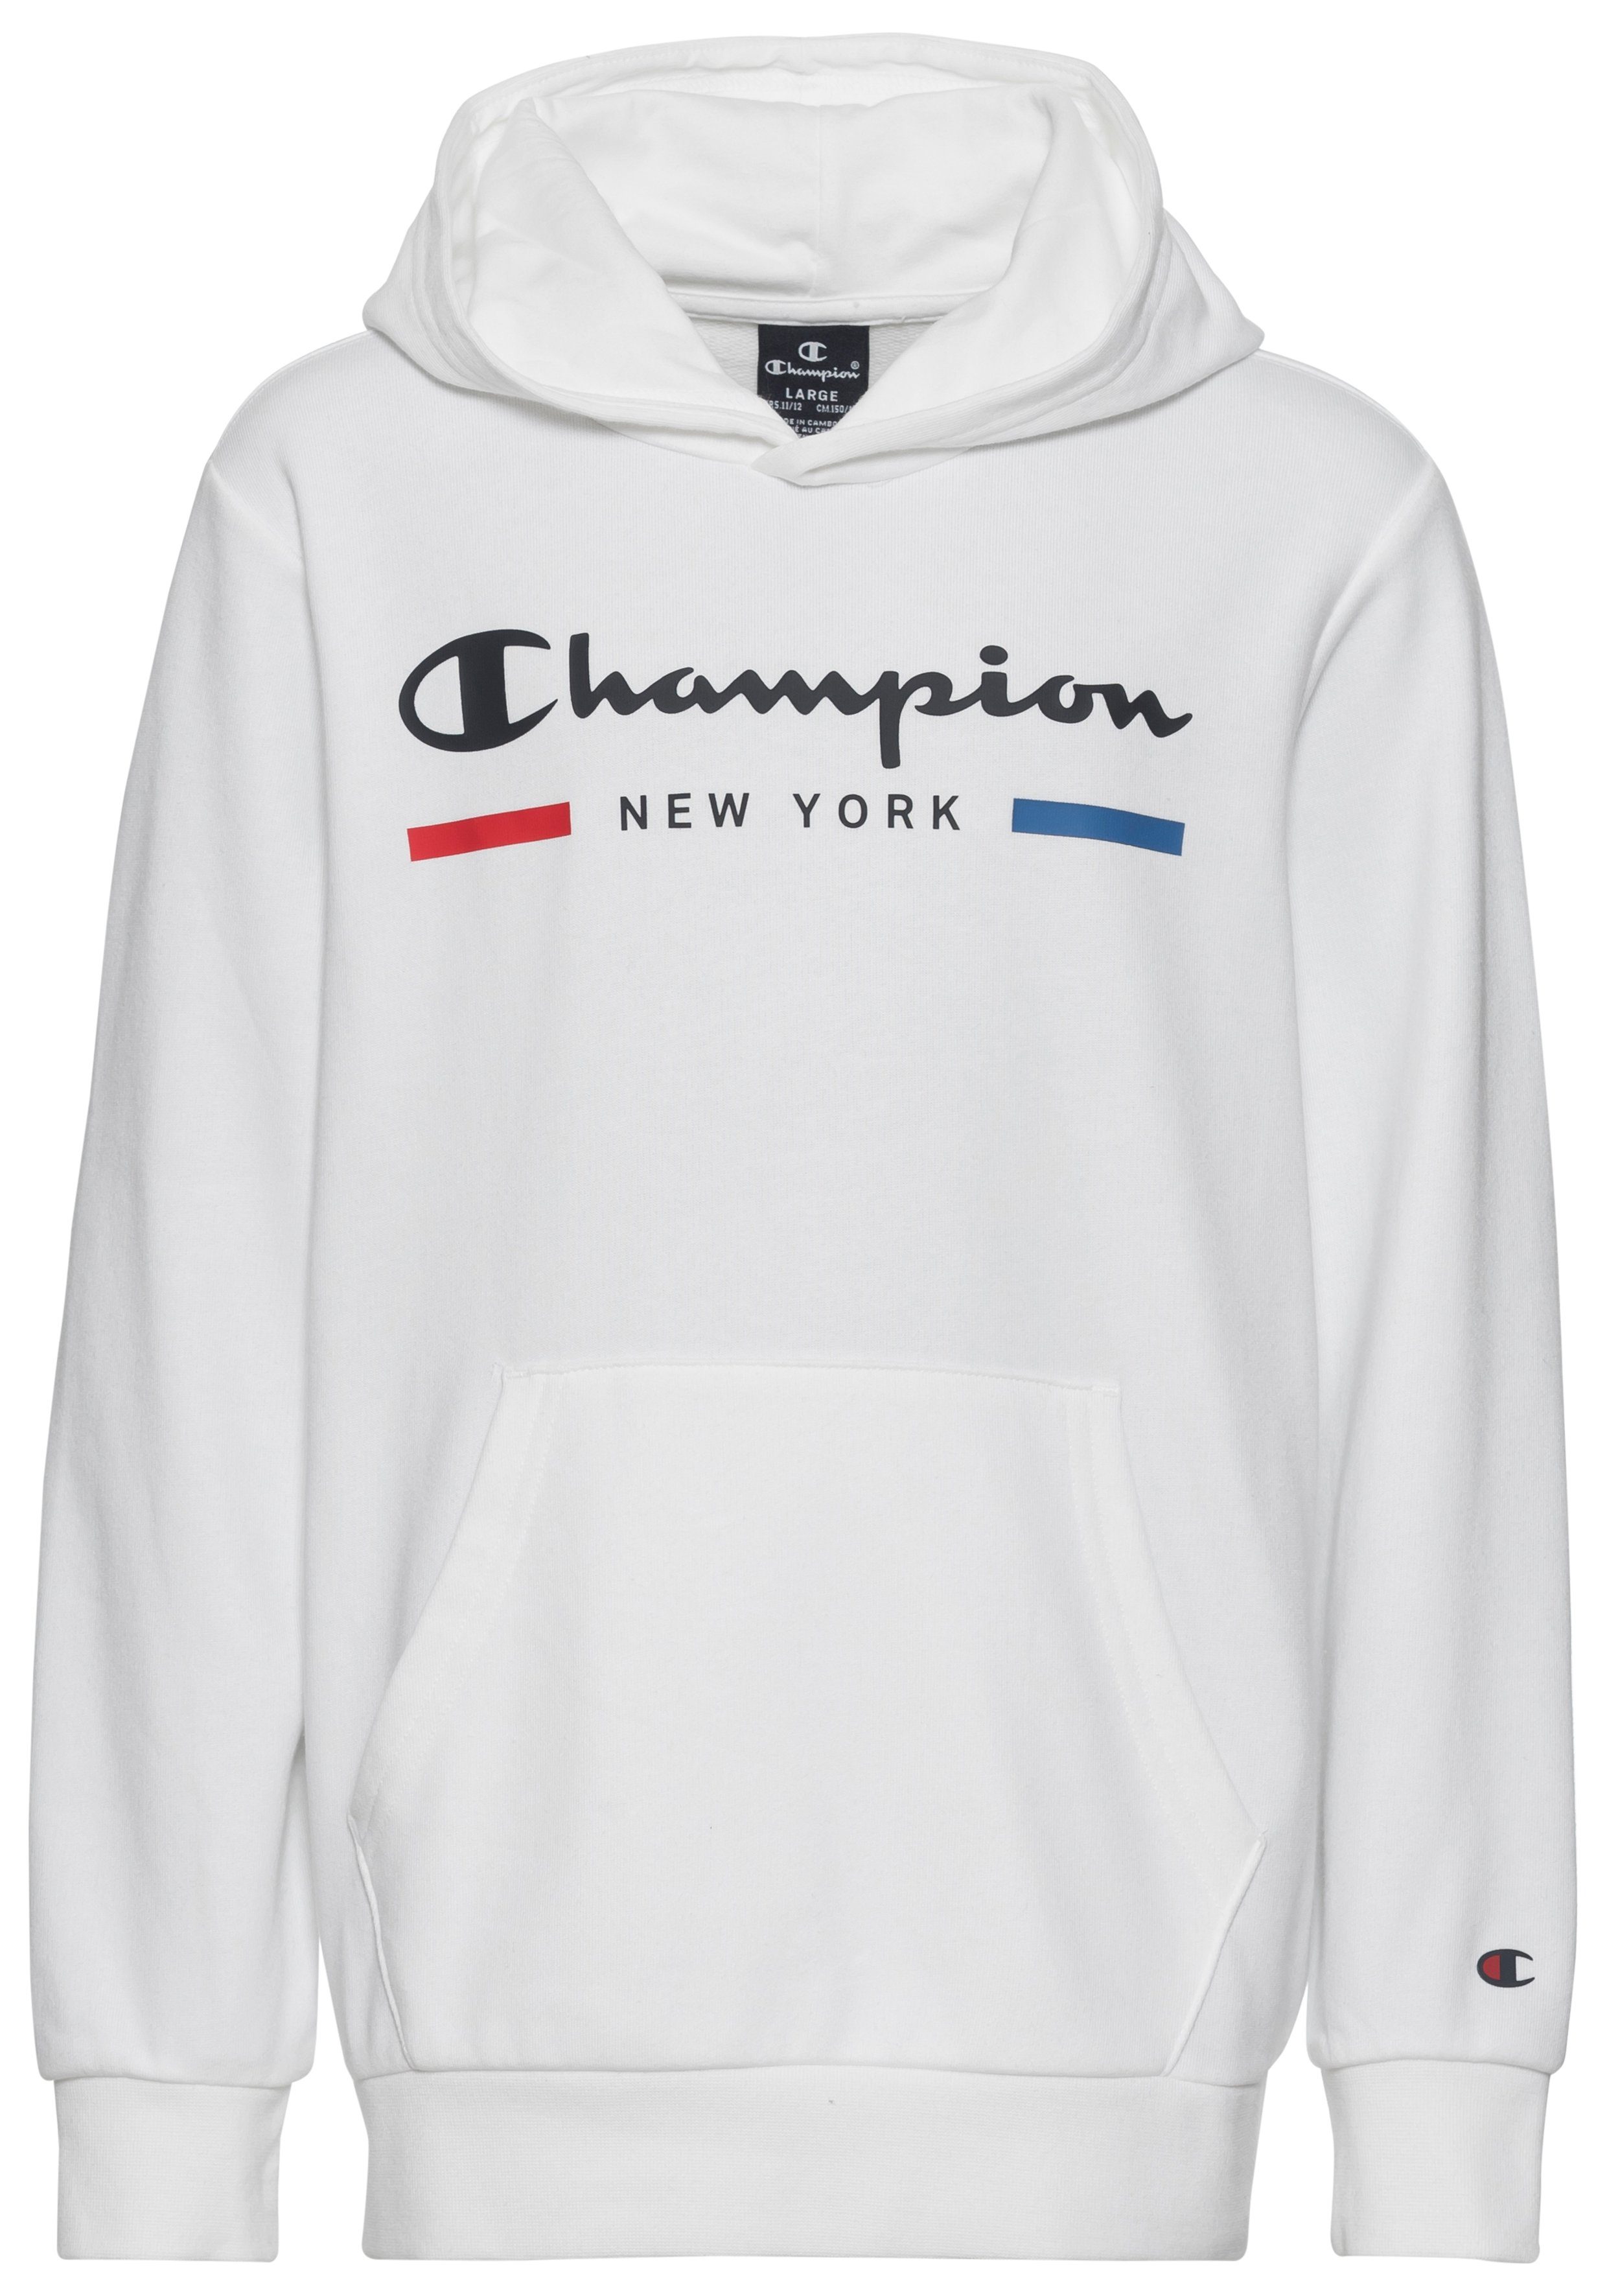 kaufen OTTO Champion Jungensweatshirts | online